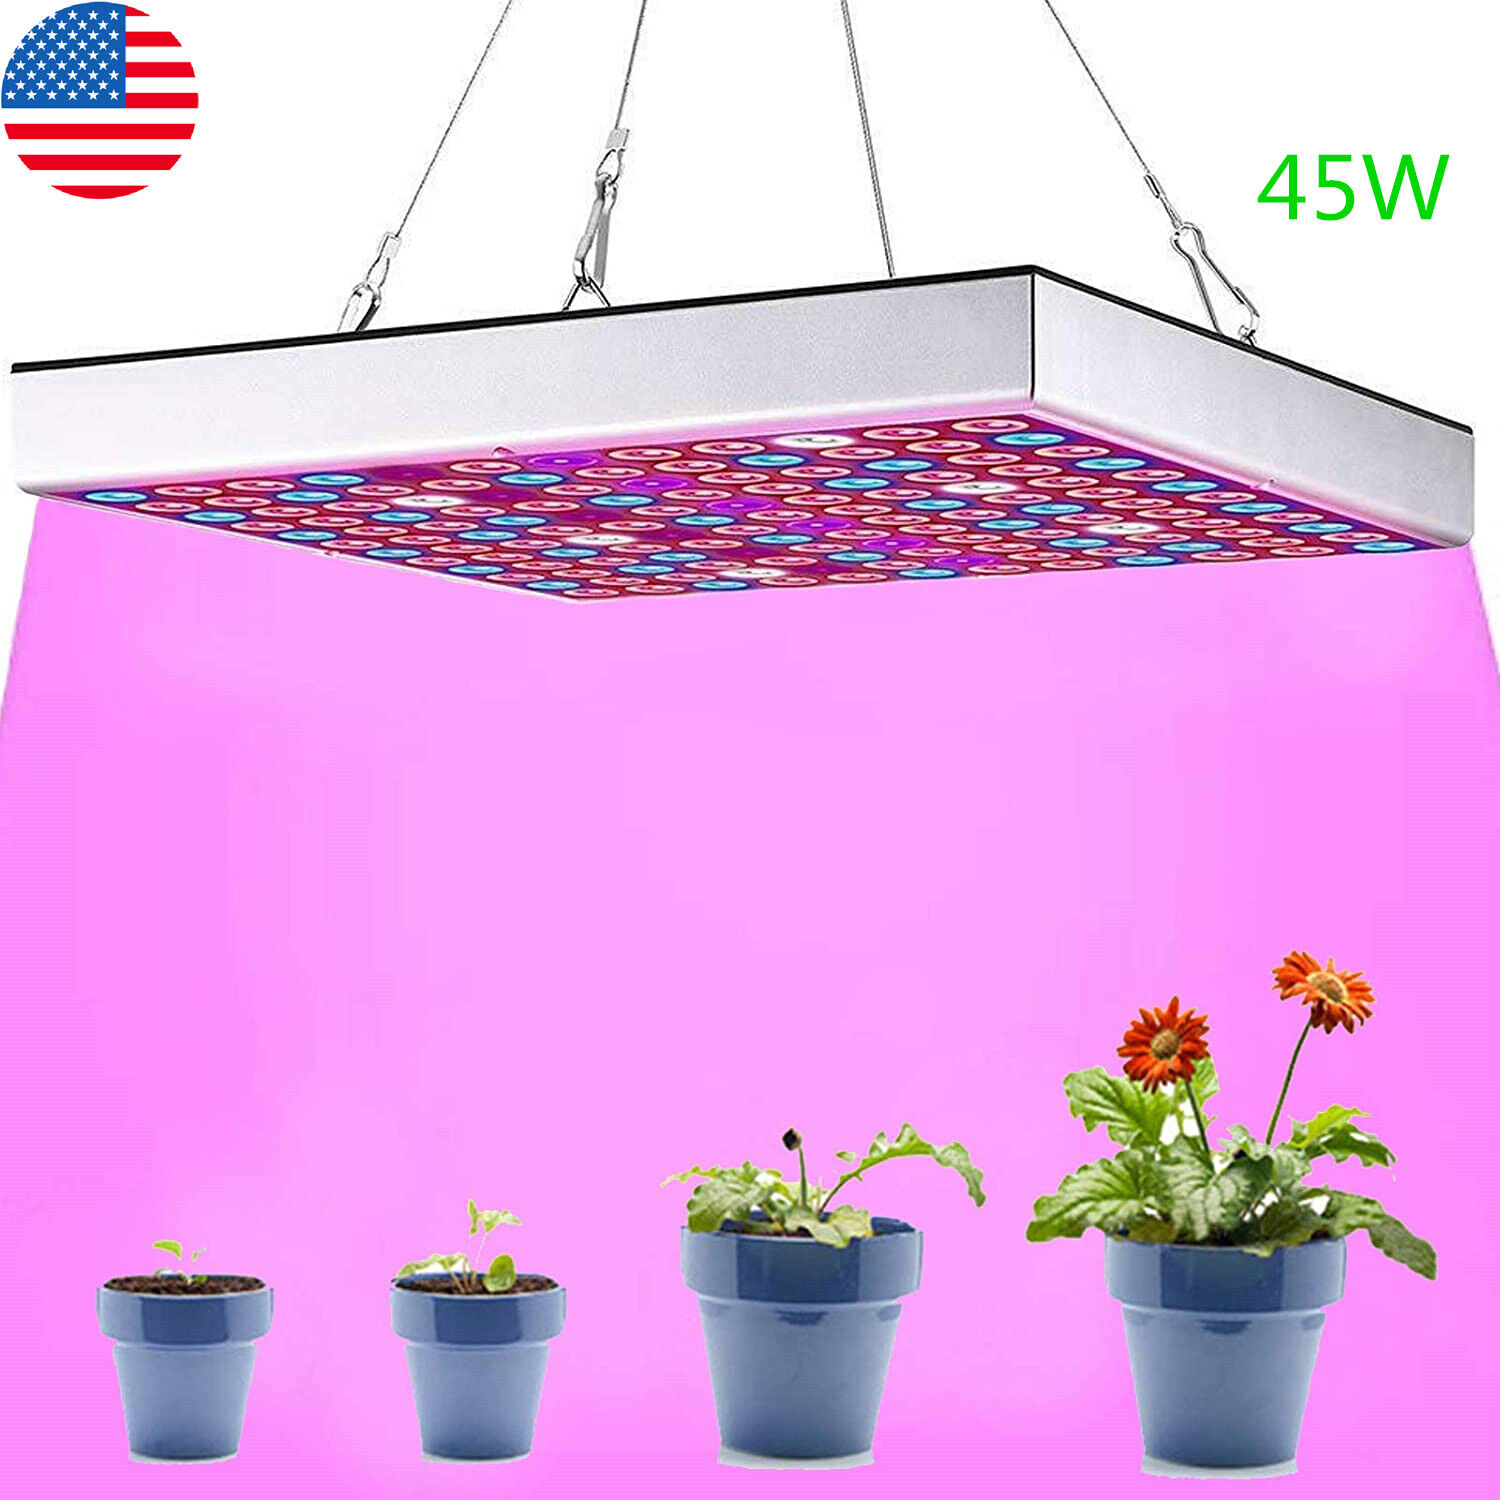 LED Grow Light Kit Full Spectrum Lamp For Panel Indoor Veg Flower Plant 45W